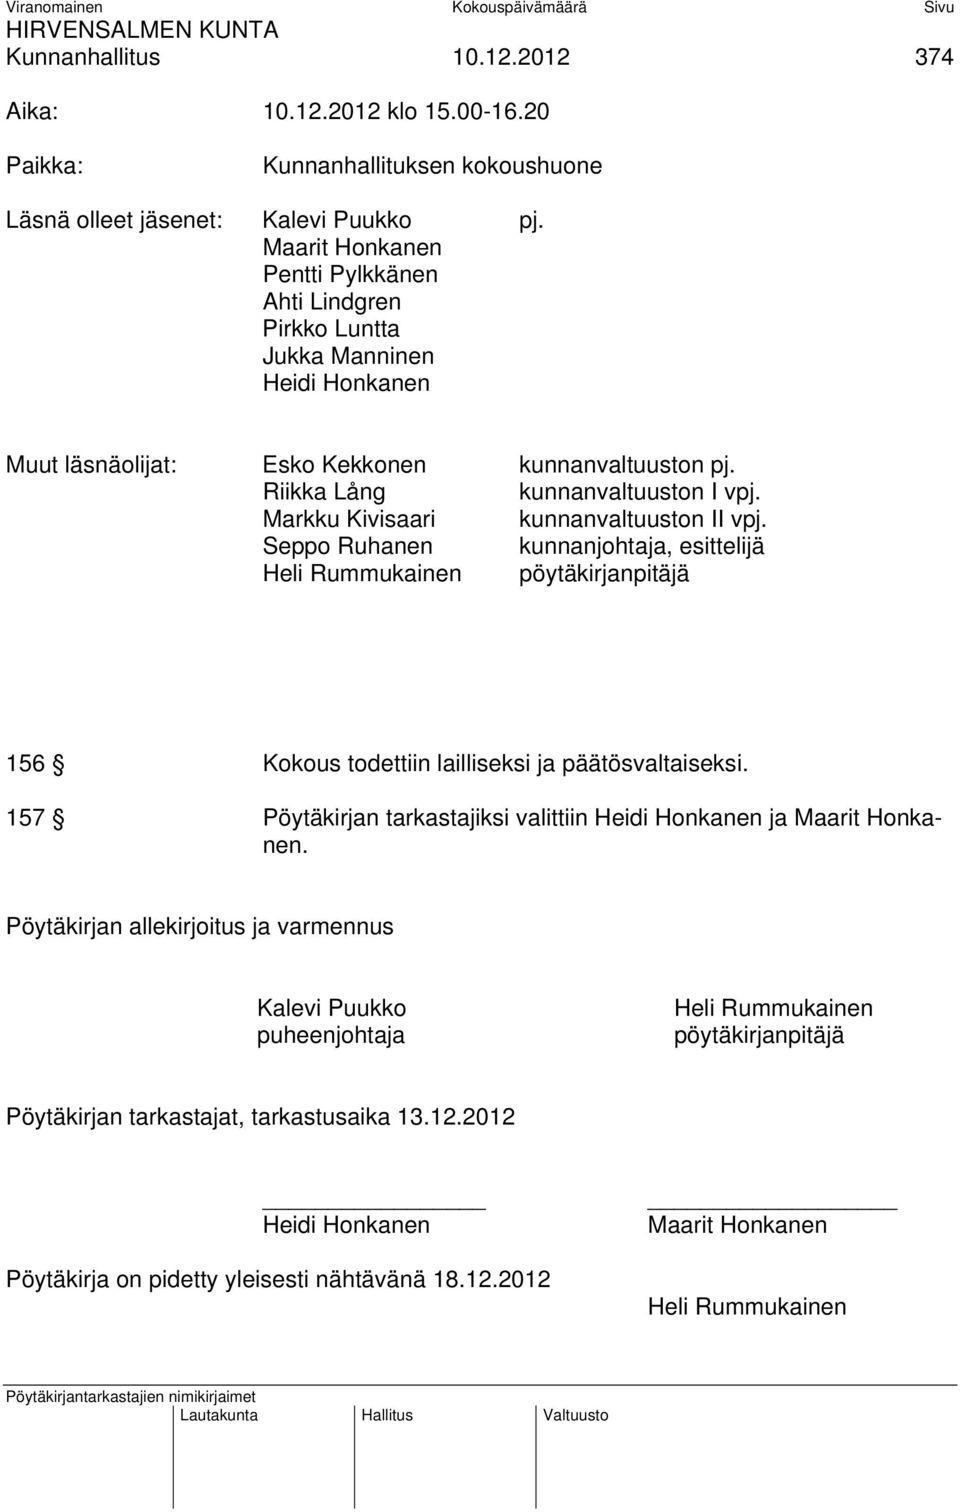 Markku Kivisaari kunnanvaltuuston II vpj. Seppo Ruhanen kunnanjohtaja, esittelijä Heli Rummukainen pöytäkirjanpitäjä 156 Kokous todettiin lailliseksi ja päätösvaltaiseksi.